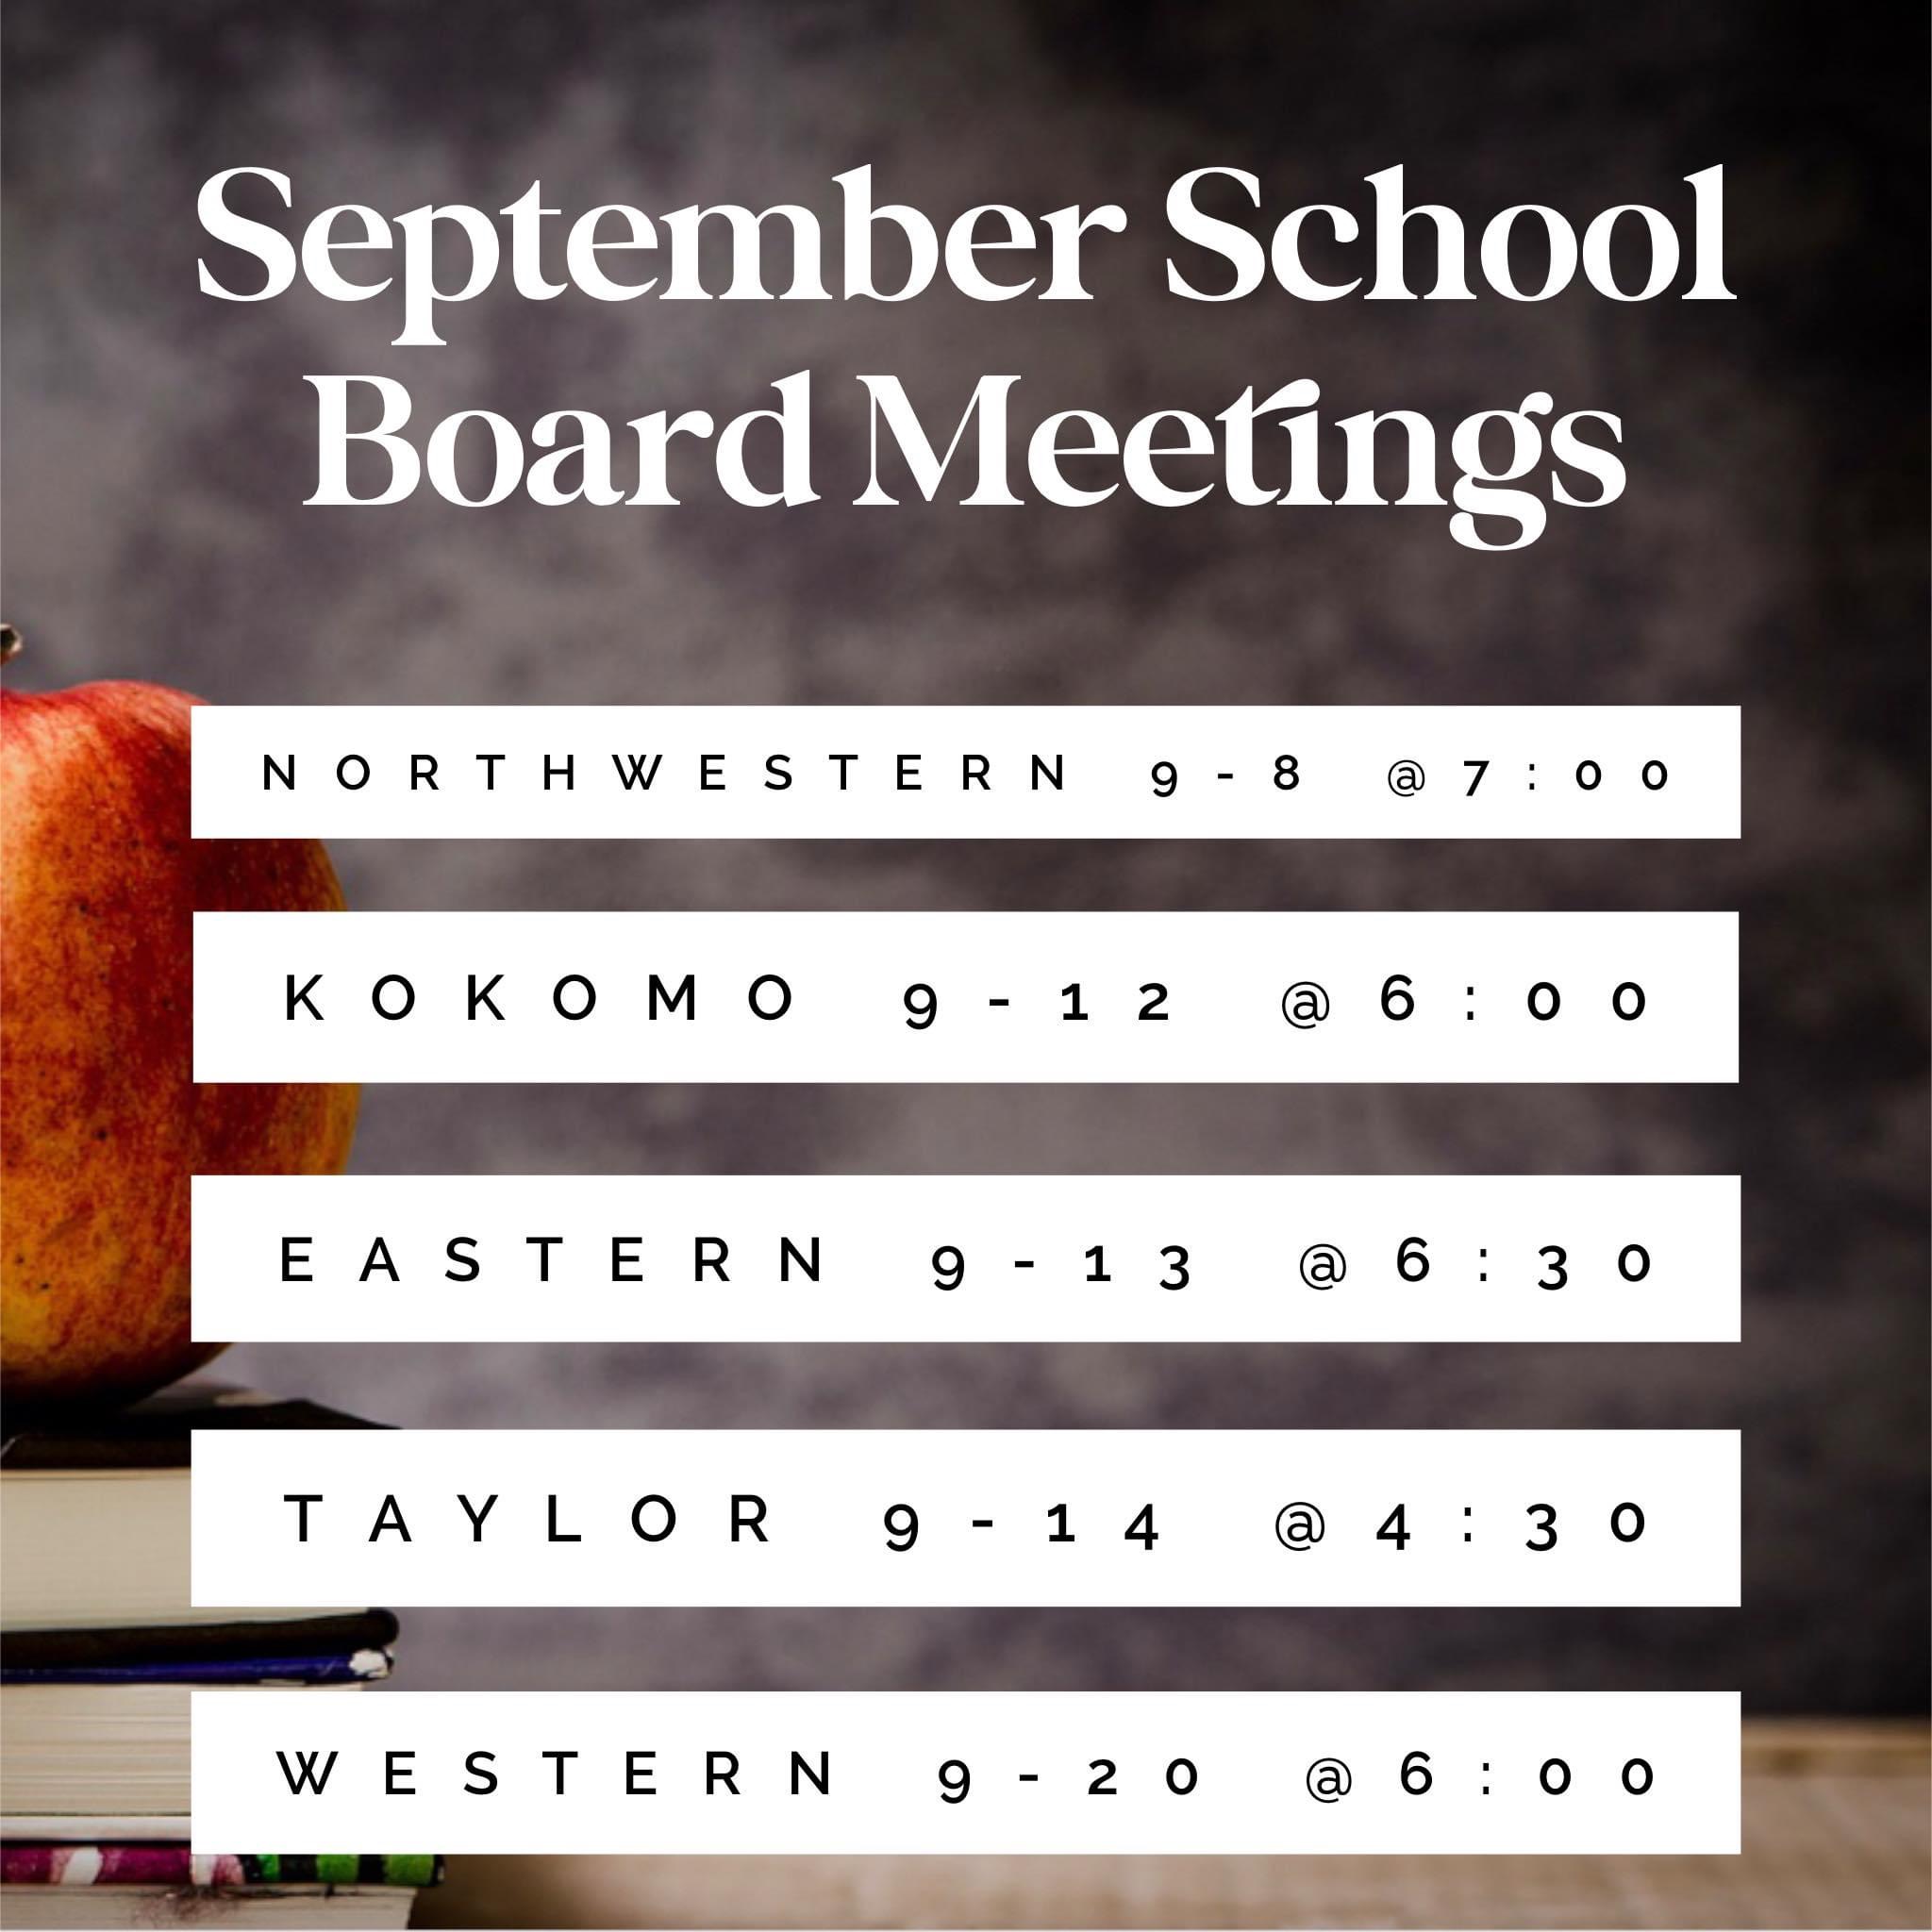 September School Board Meetings